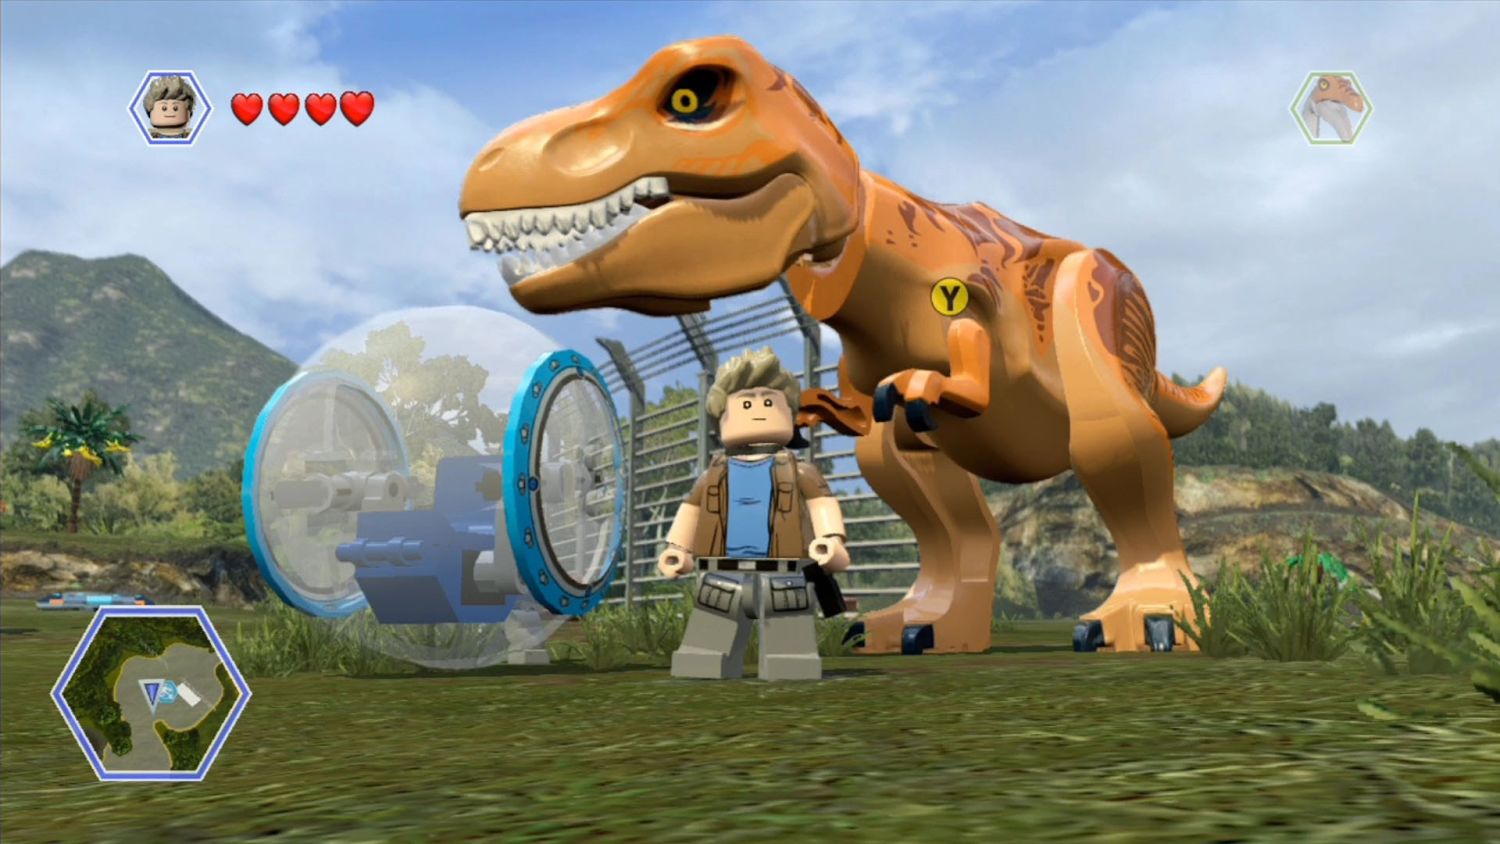 LEGO Jurassic World: confira dicas para mandar bem no game de aventura